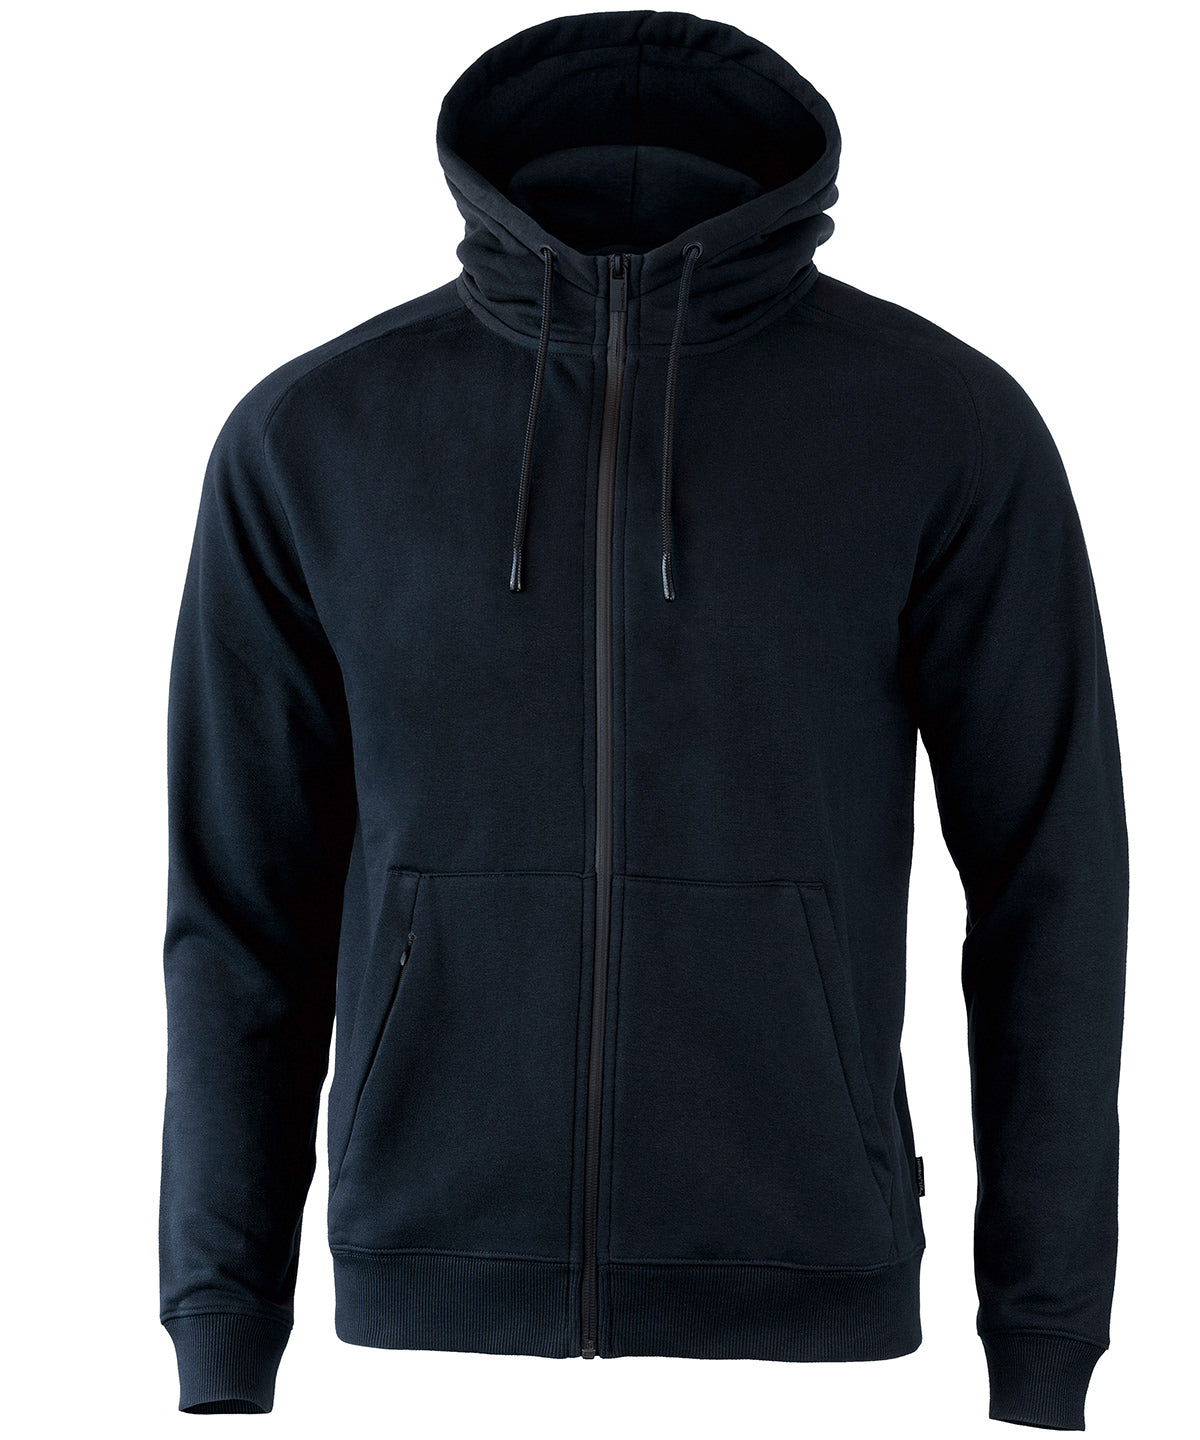 Lenox – athletic full-zip hoodie